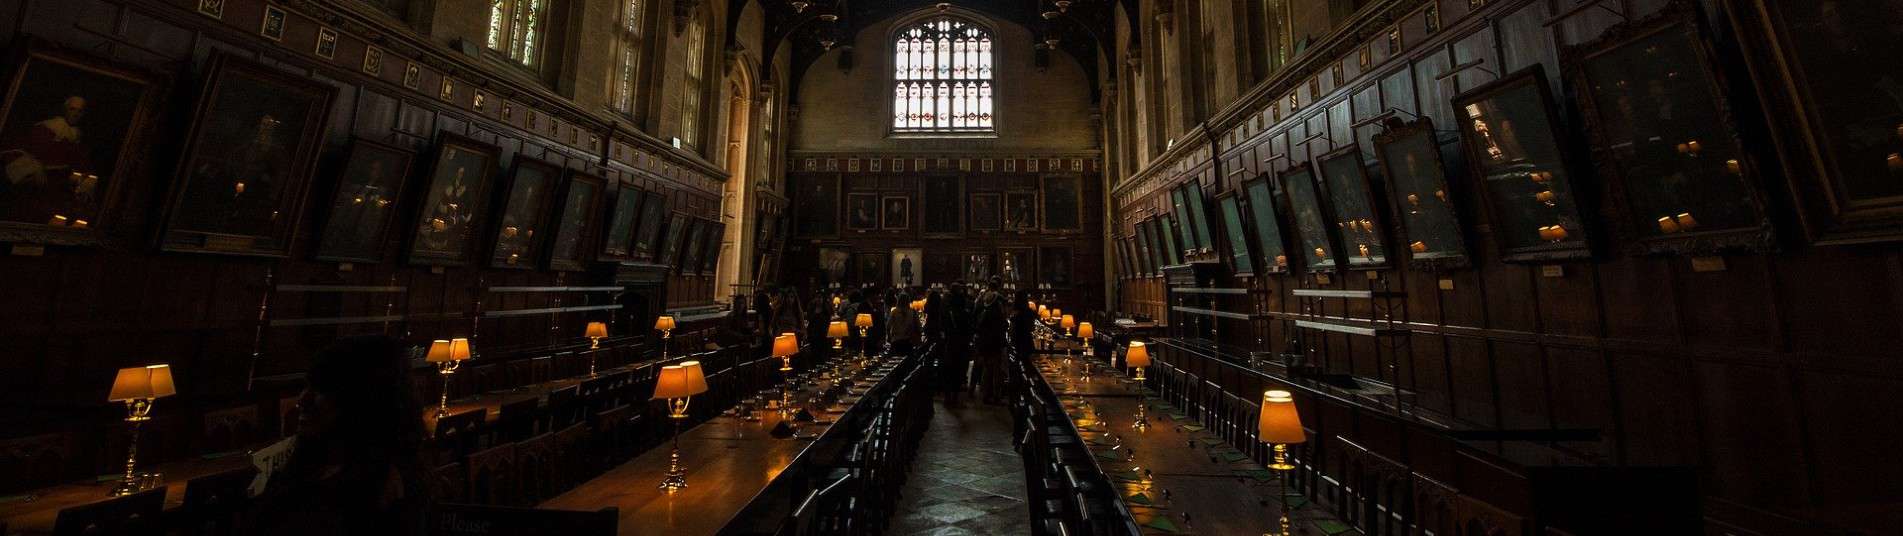 Harry Potter à Londres